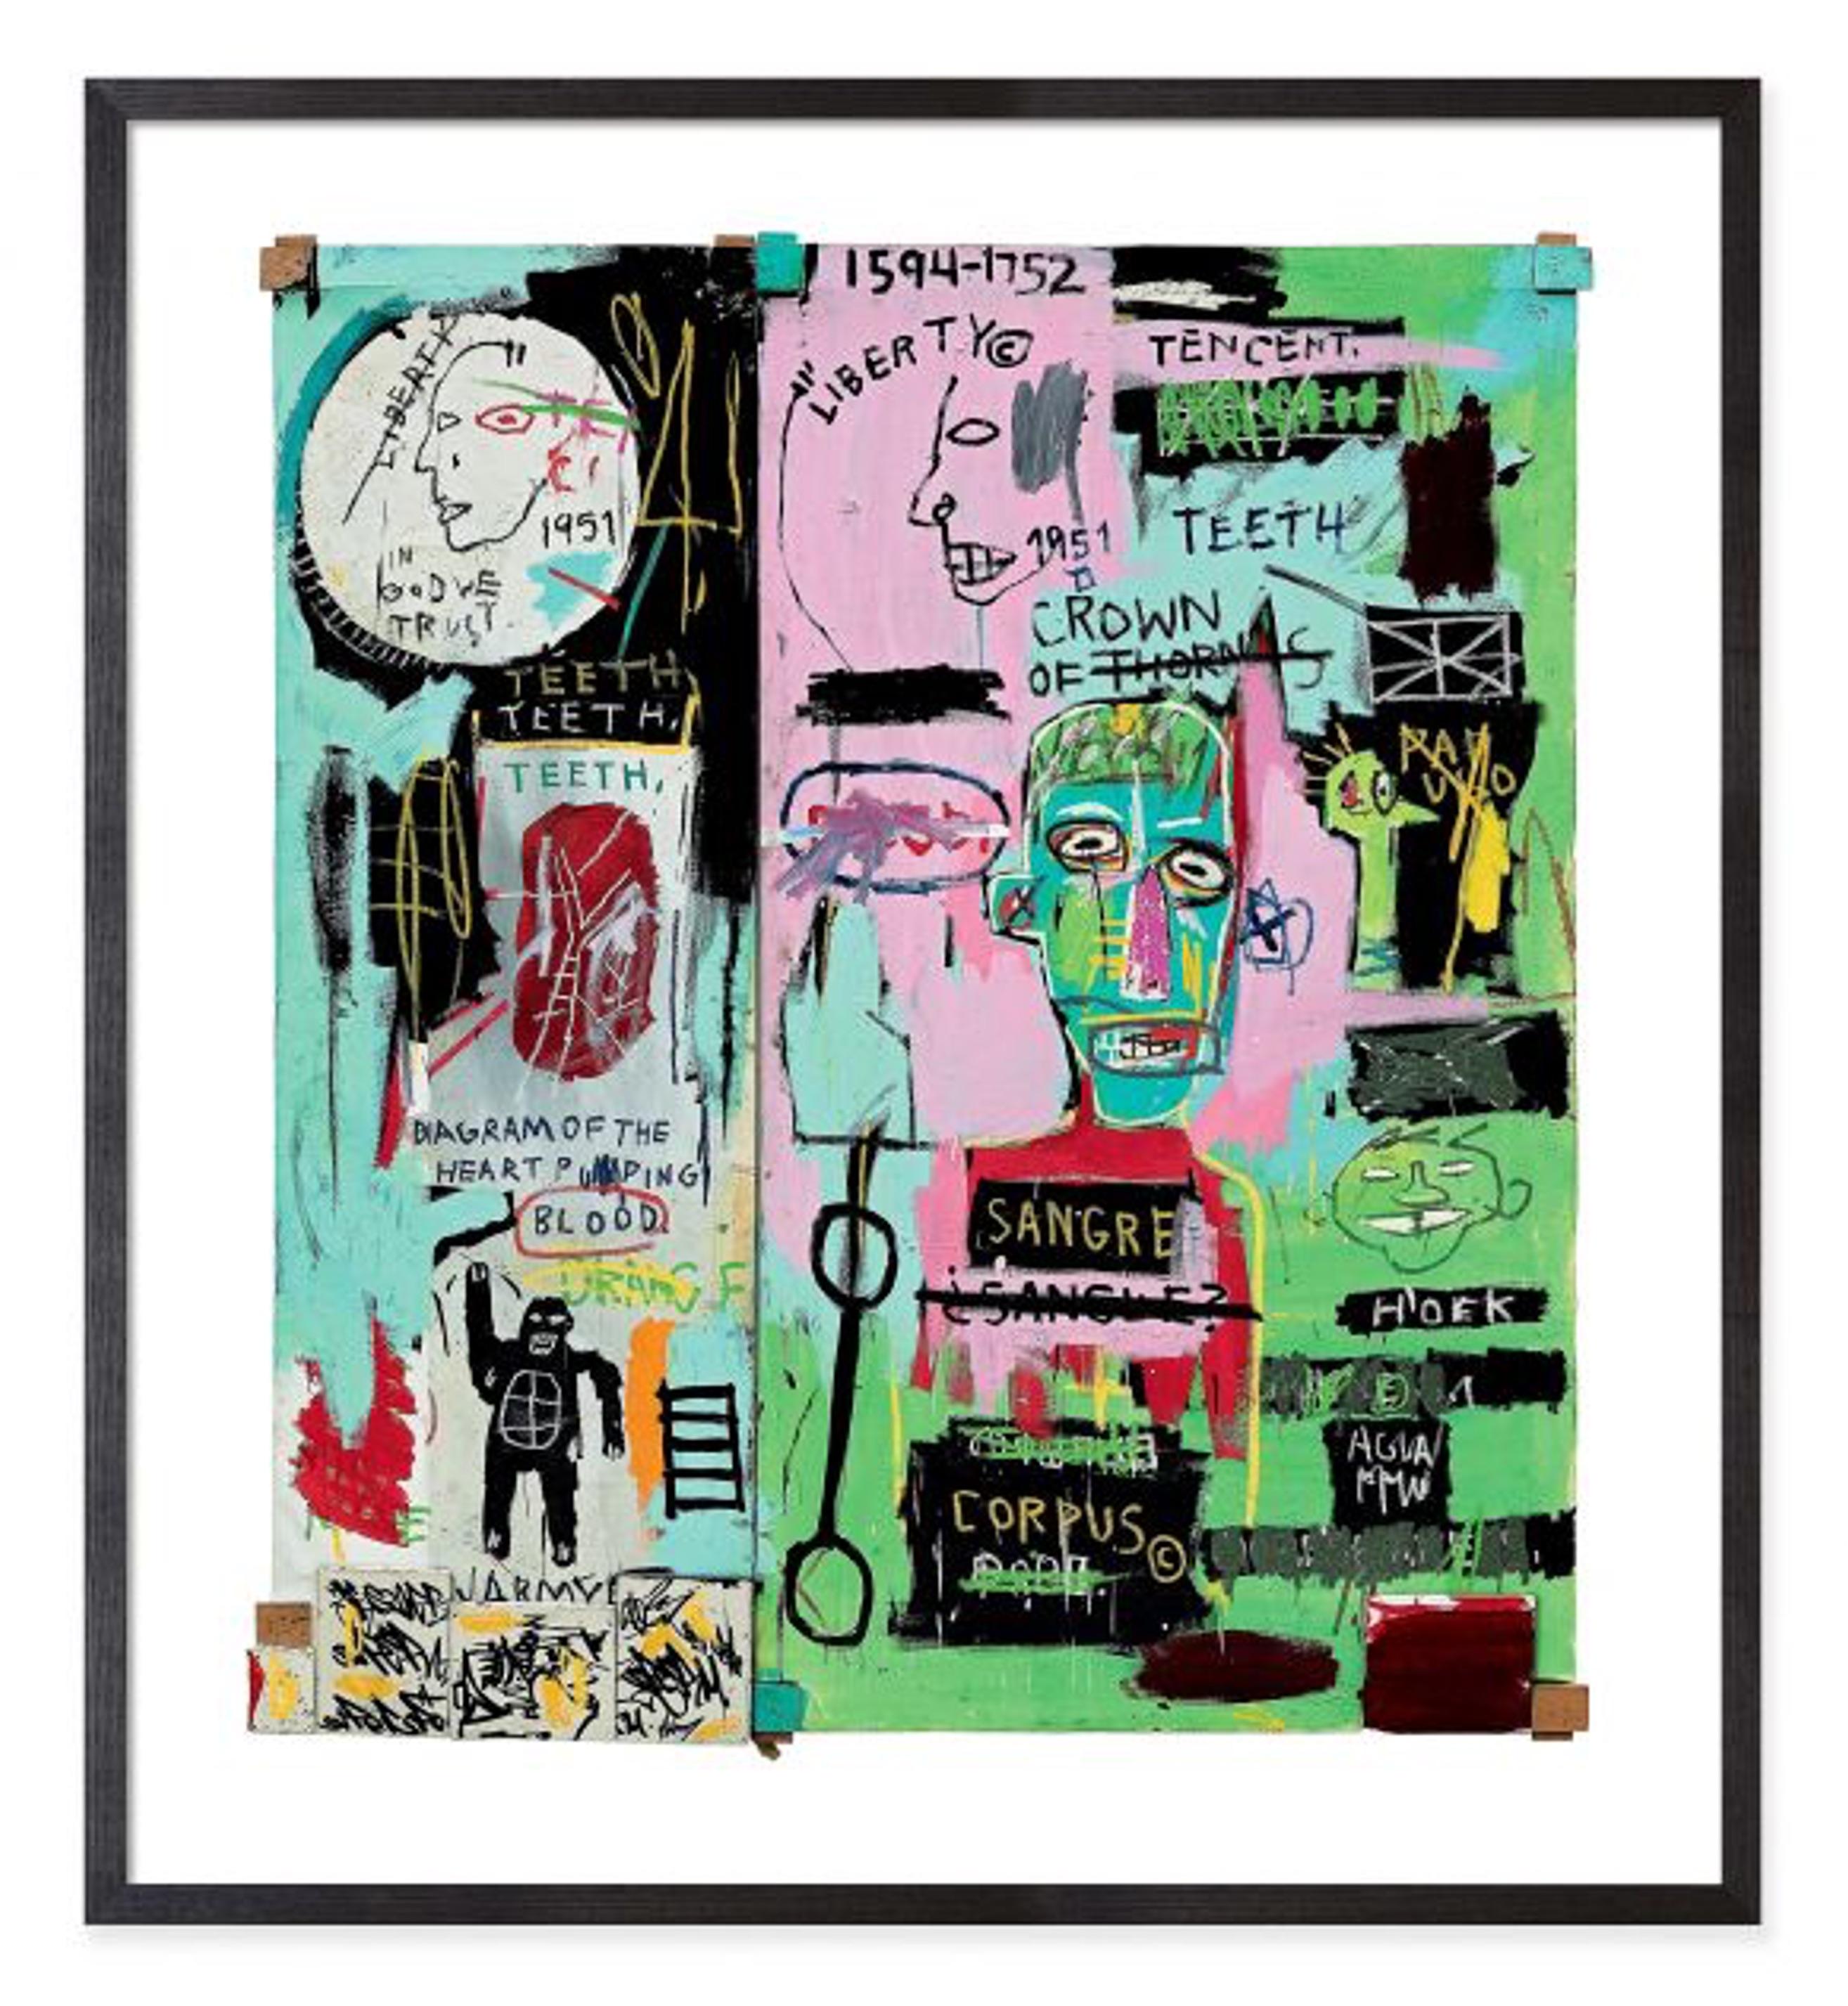 Jean-Michel Basquiat - Auf Italienisch (gerahmt)

Größe - 29h x 26w x 1 "d

MATERIALIEN - Druck auf Papier, in Holz gerahmt

Beschreibung
Dieser gerahmte Druck von Jean-Michel Basquiat zeigt eine Reproduktion von In Italian (1983), einem Werk von